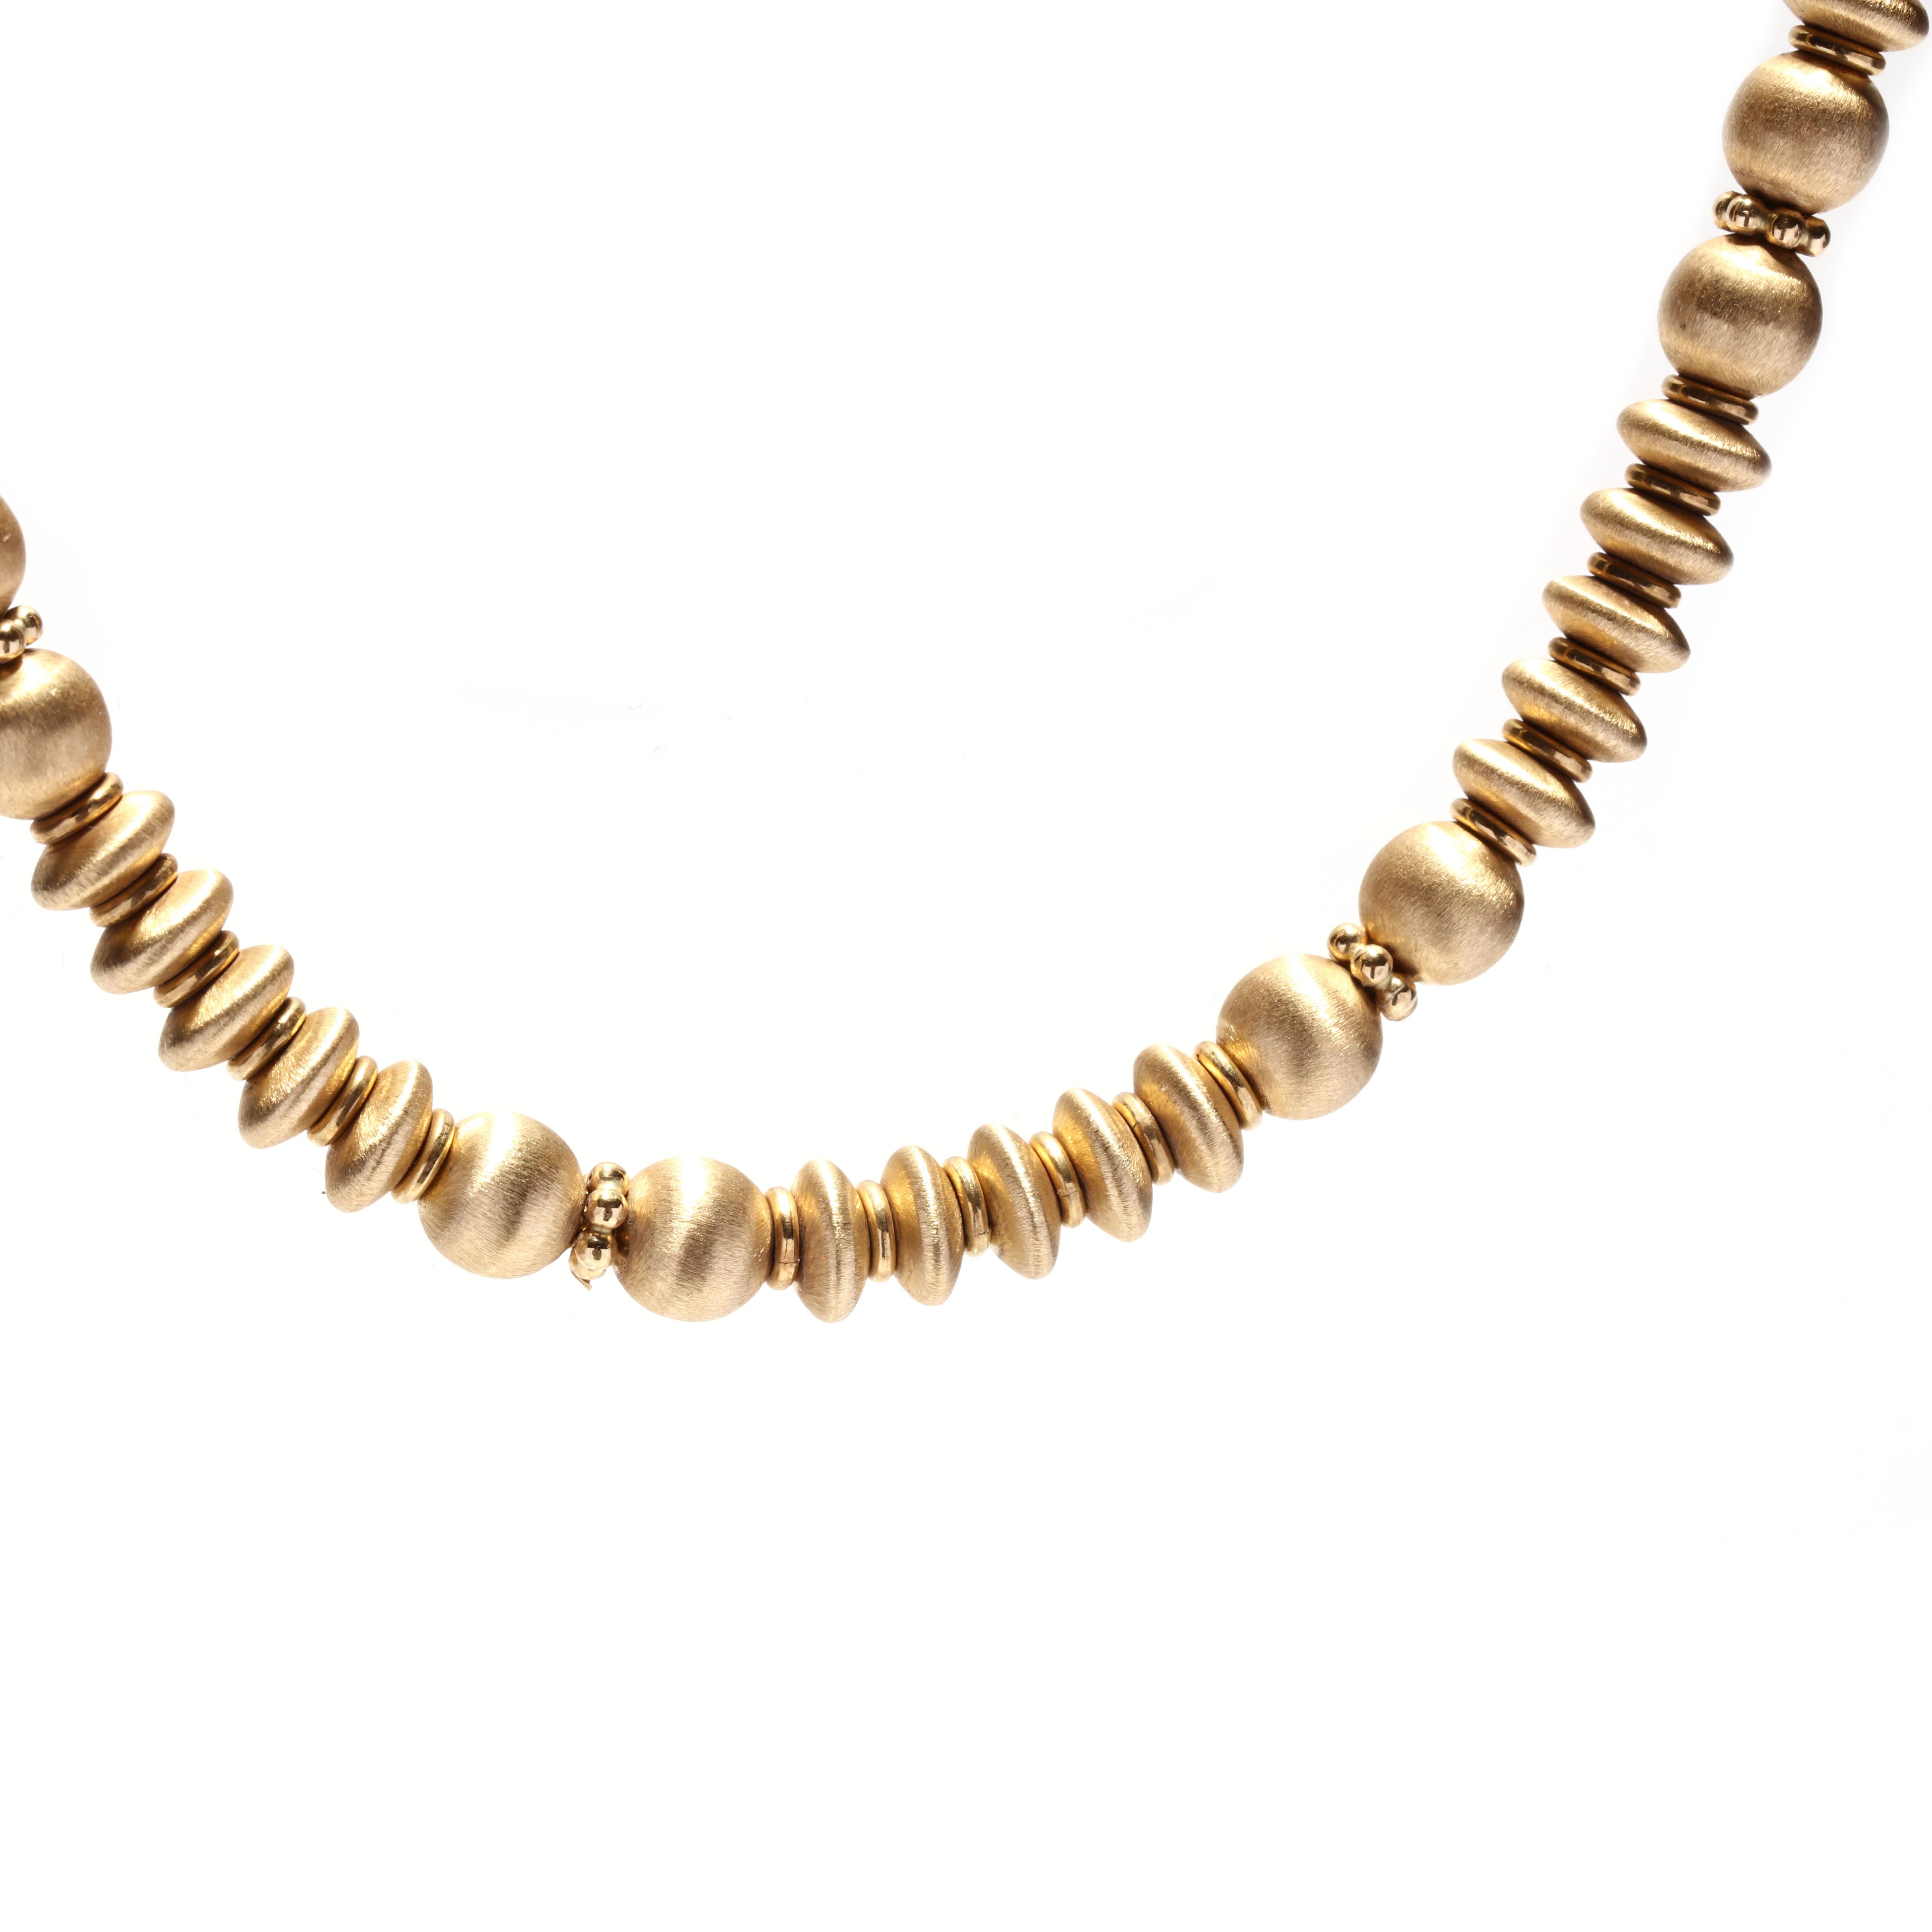 Ein Vintage italienische 18 Karat Gelbgold italienische Perle Halskette.  Diese Halskette besteht aus runden und runde Perlen aus gebürstetem Gold, hat einen Kugelverschluss und ist mit 750 *1652 VI markiert. 

Länge: 17.5 Zoll.

Breite: 6